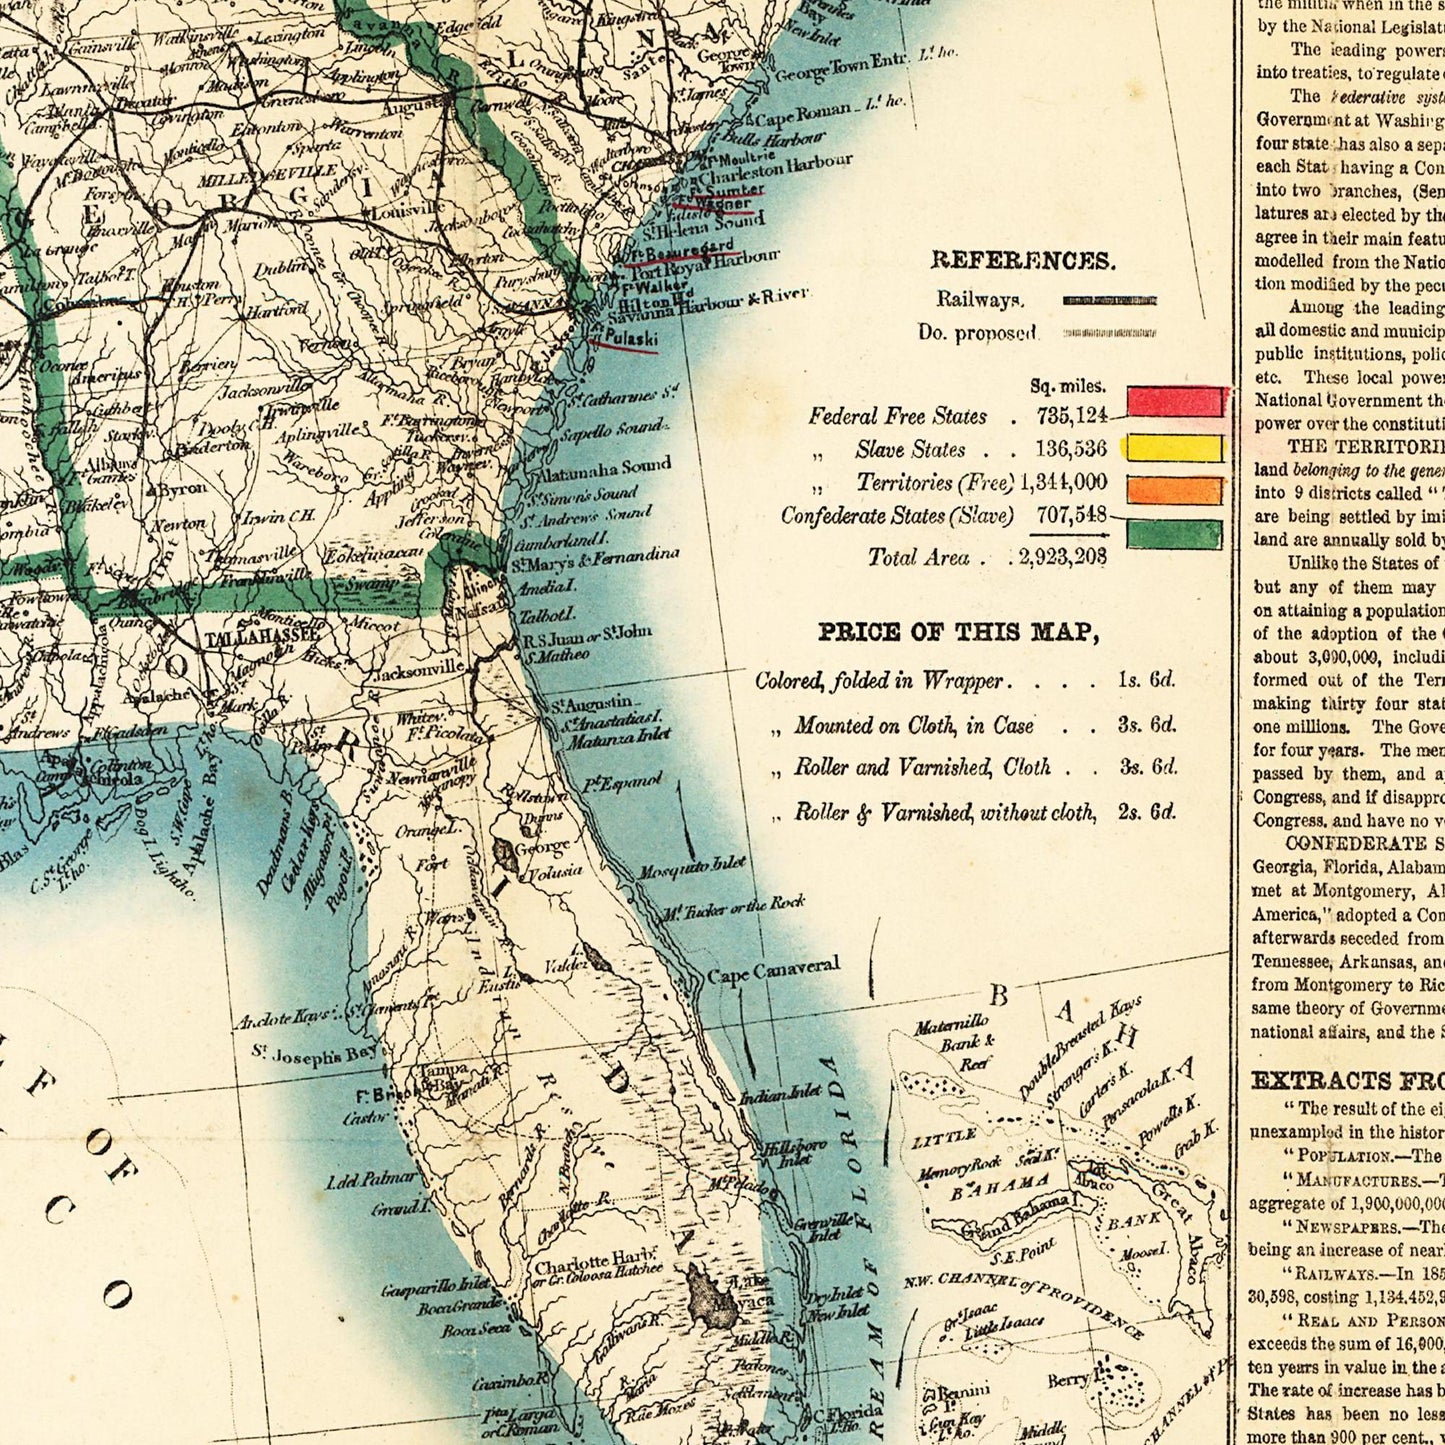 Historische Landkarte USA um 1863